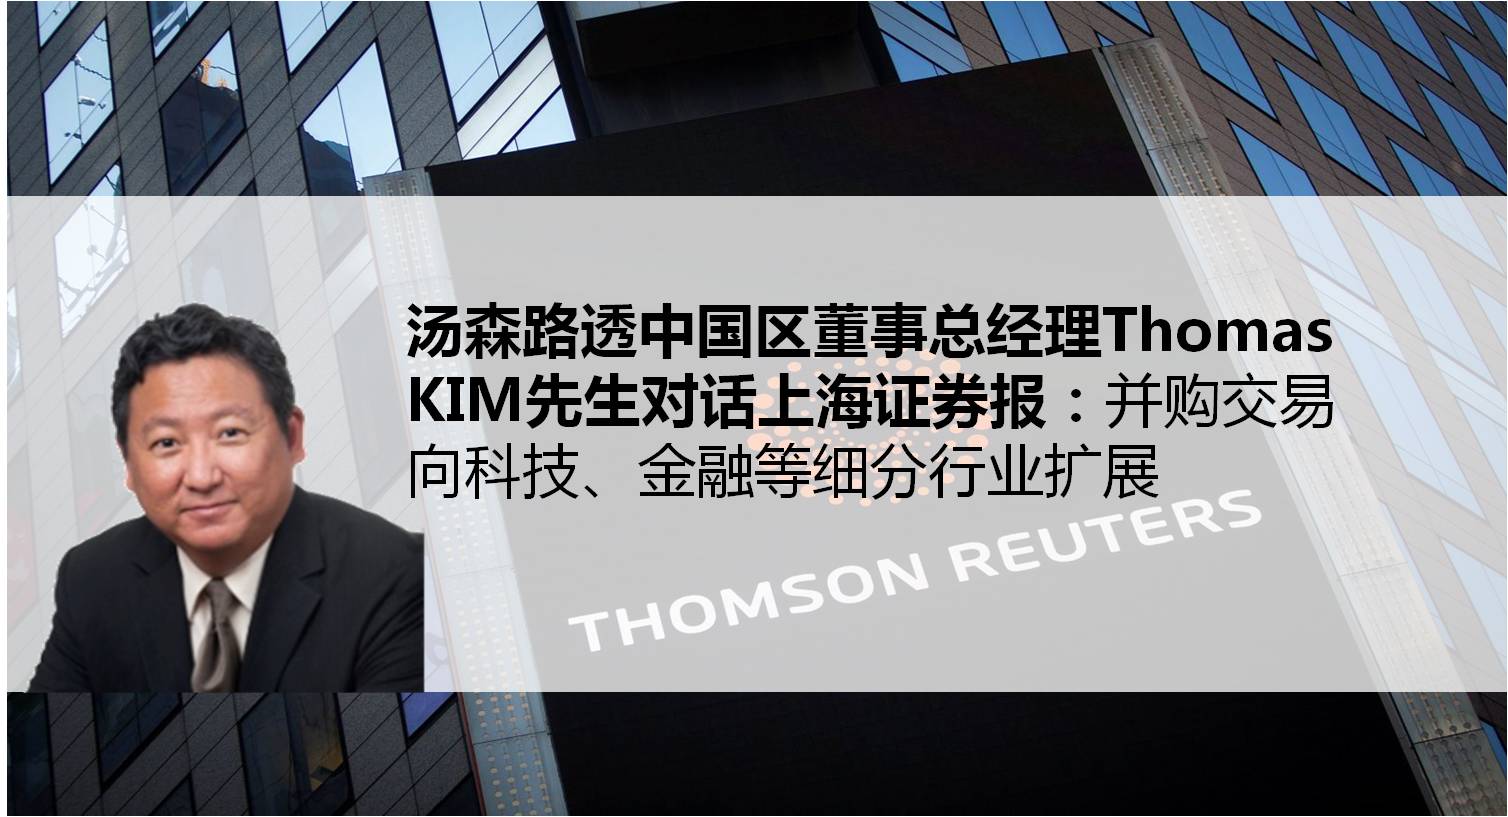 专访汤森路透中国区董事总经理thomas kim:并购交易向科技,金融等细分